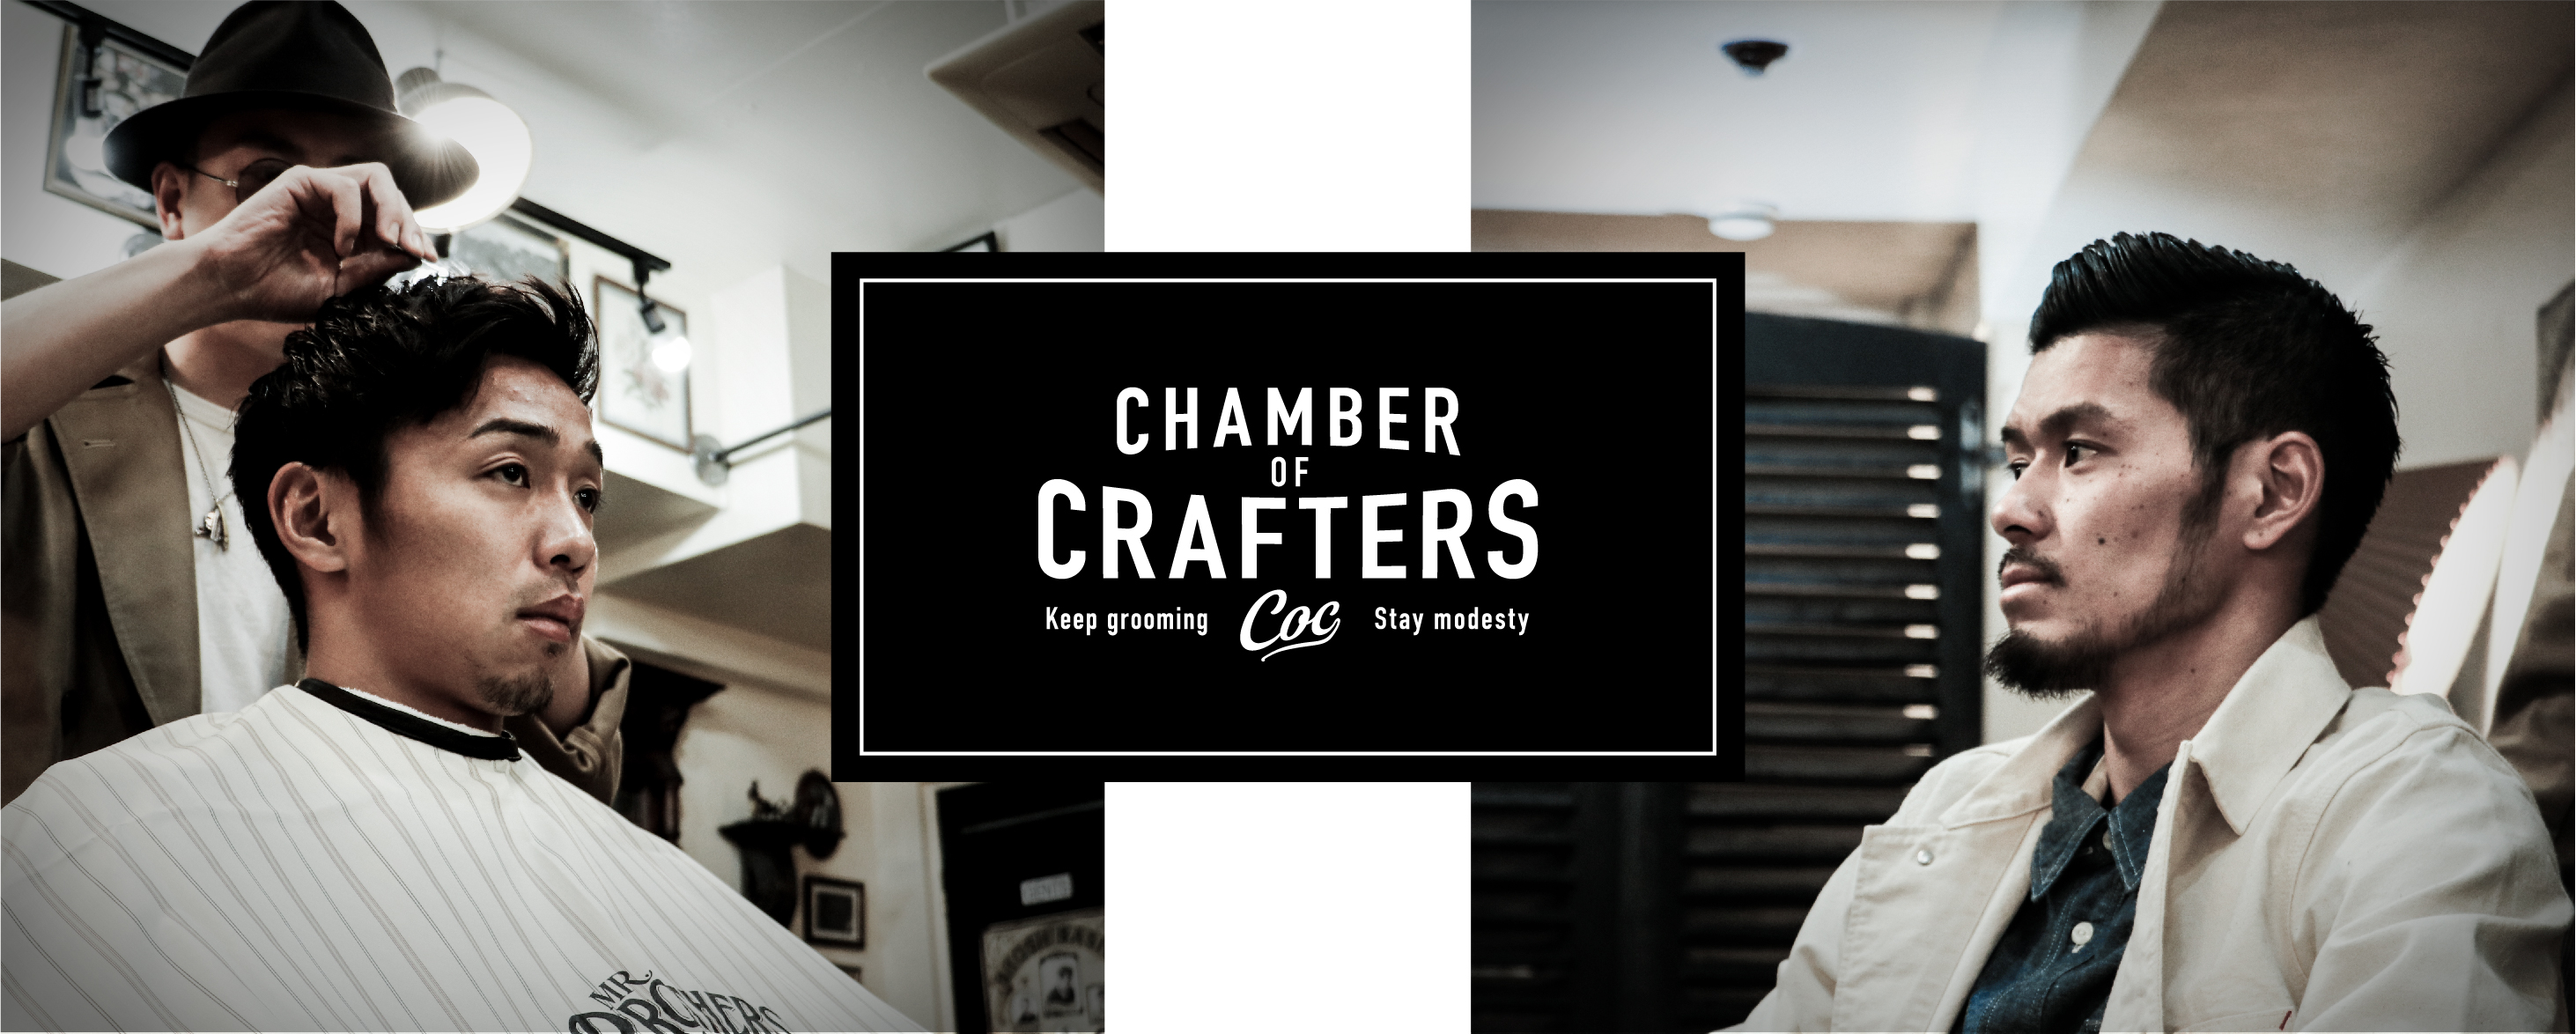 メンズグルーミングブランド Chamber Of Crafters 新商品